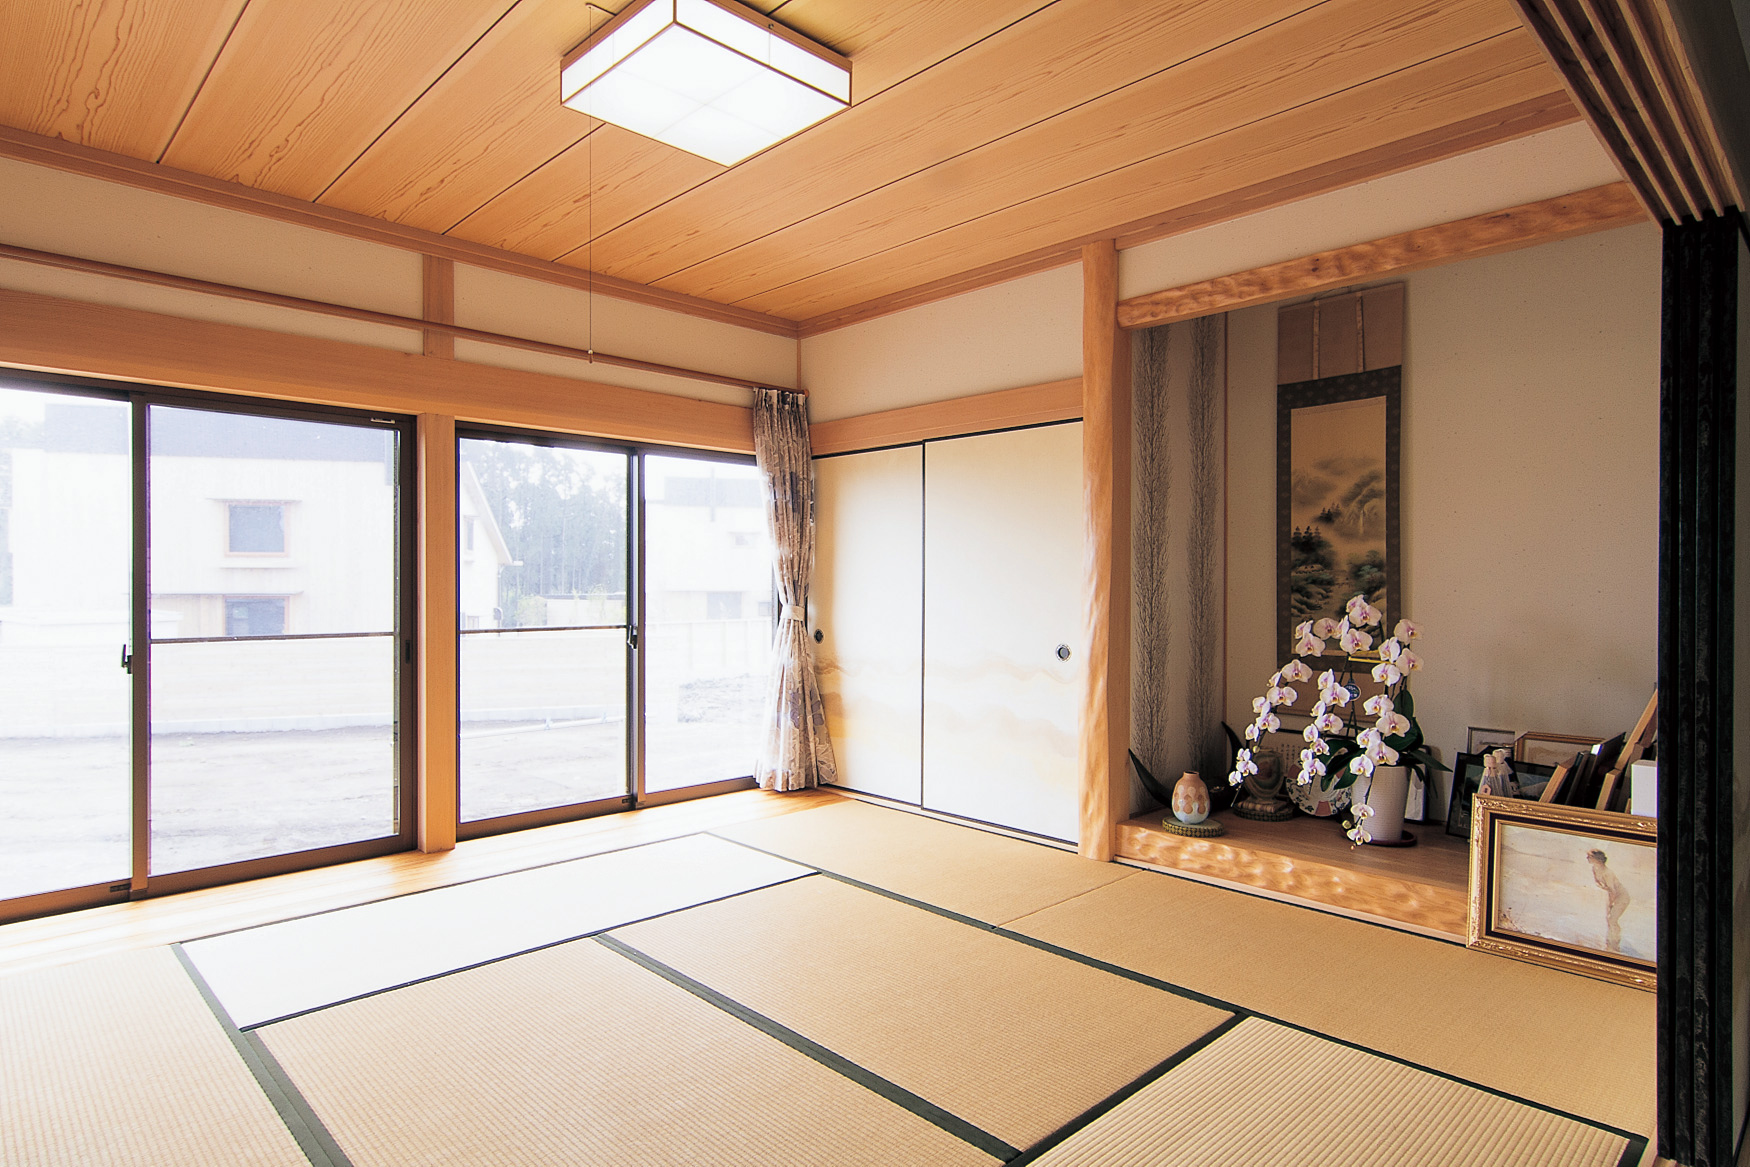 客間としても使う和室はゆとりある広さを確保。光と風を通す開口も大きい。腰板の見切り部分は面を取り、掃除しやすく